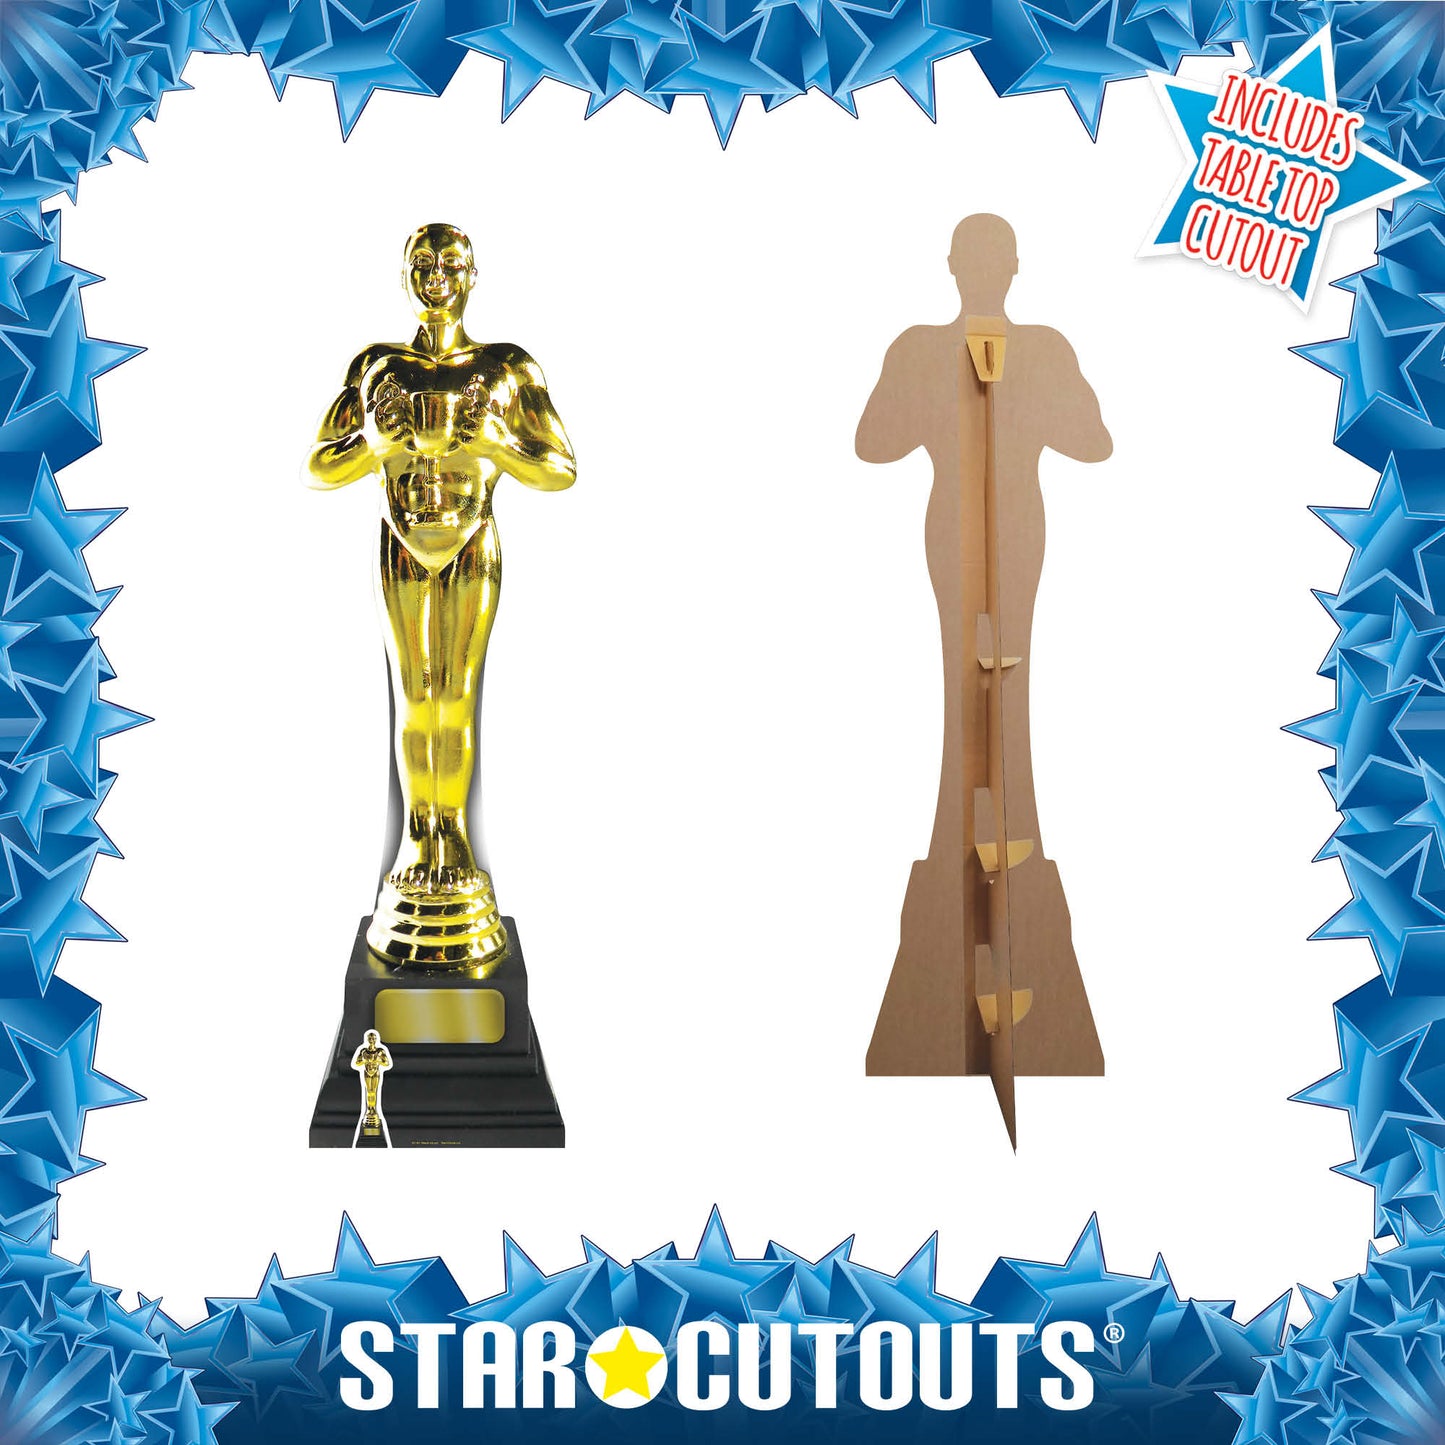 SC181 Golden Award cut-out Cardboard Cut Out Height 182cm